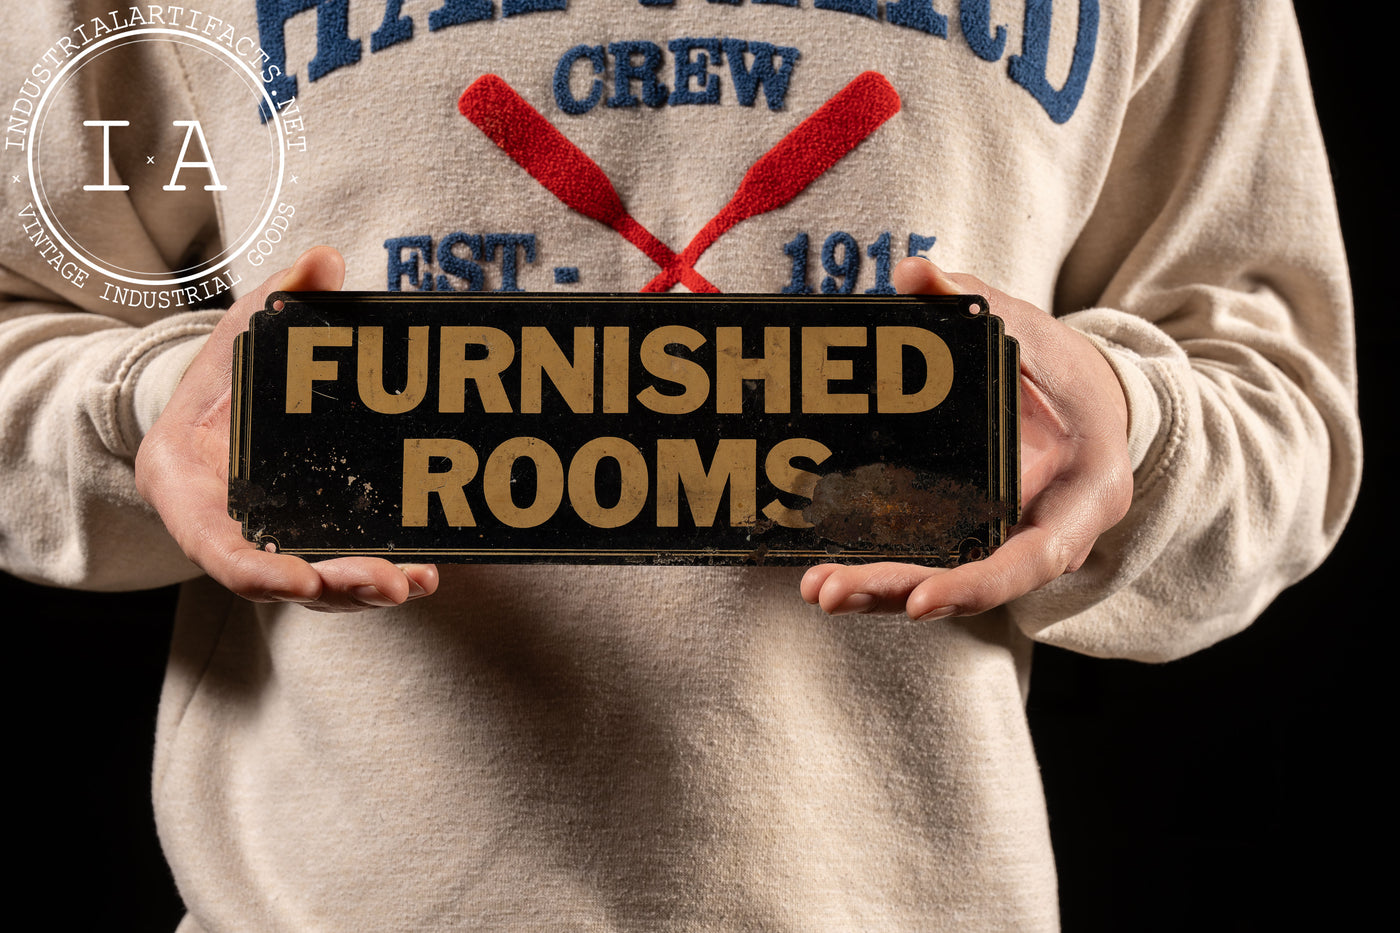 Vintage Furnish Rooms SST Litho Sign